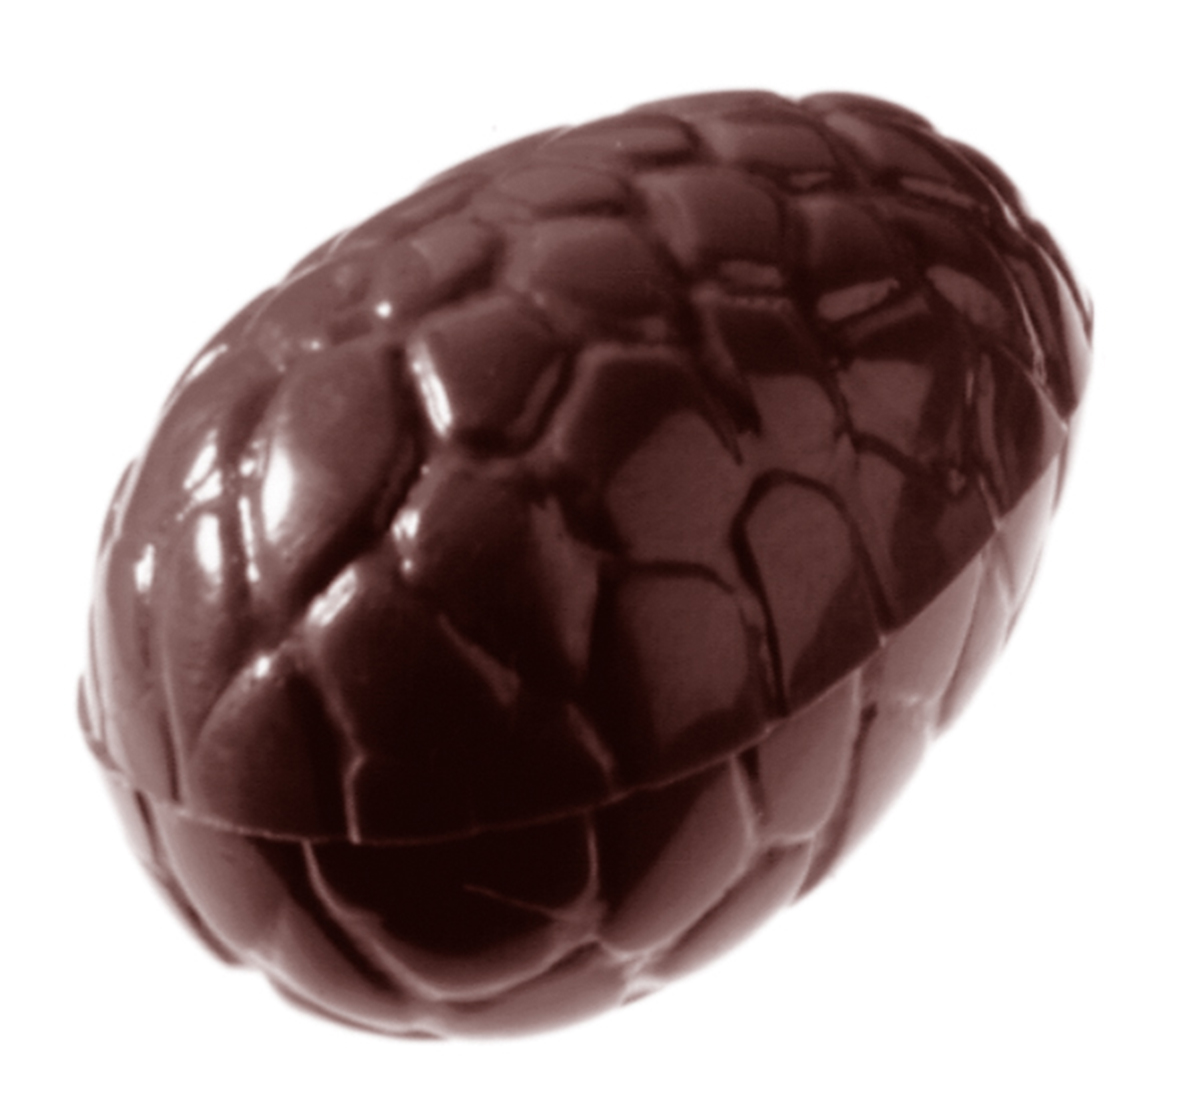 Billede af Professionel chokoladeform i polycarbonat - Egg kroko 3,5 cm CW1537